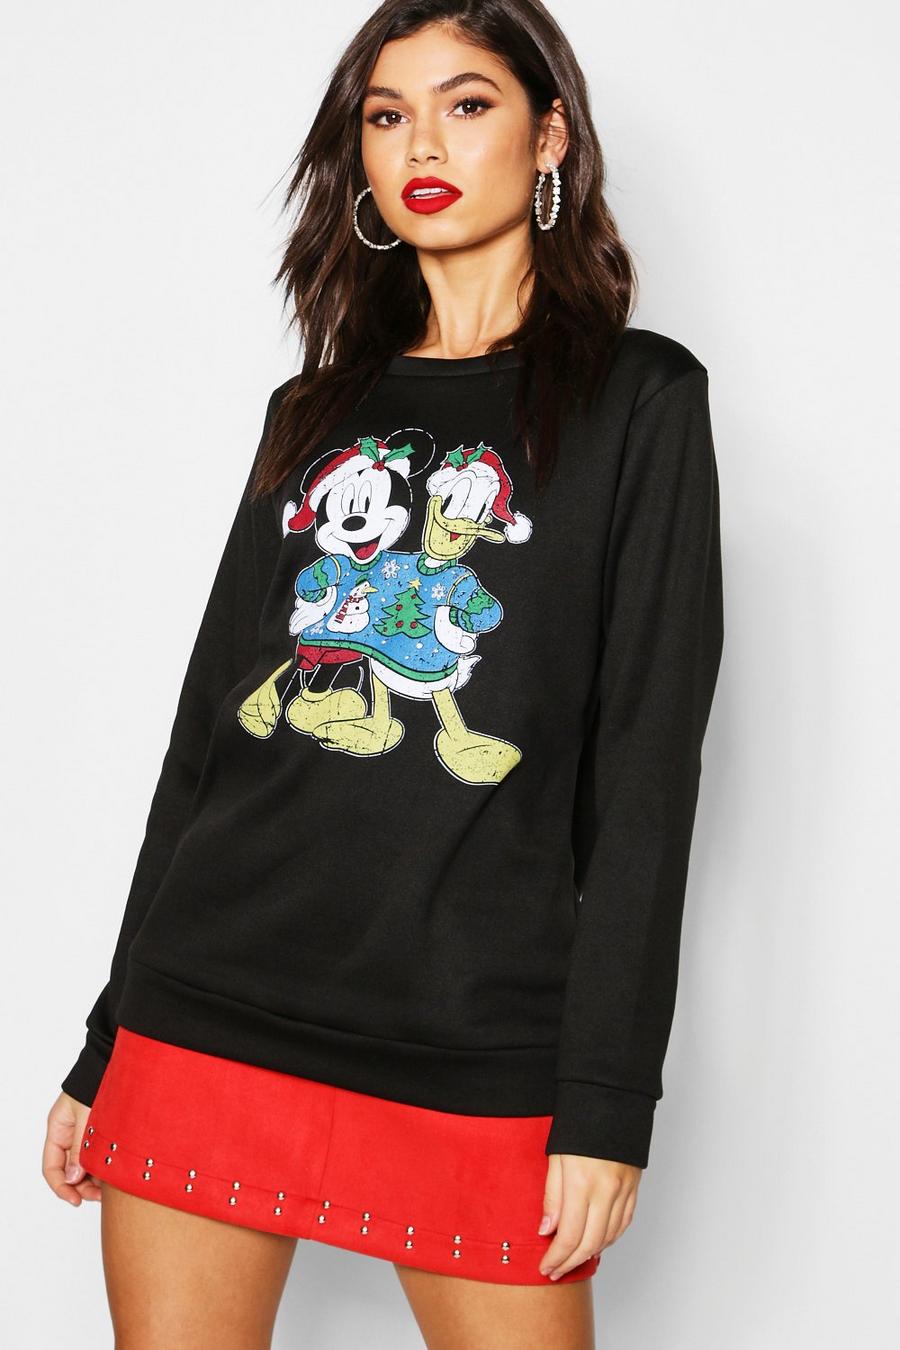 Sudadera navideña de Mickey y Donald de Disney image number 1